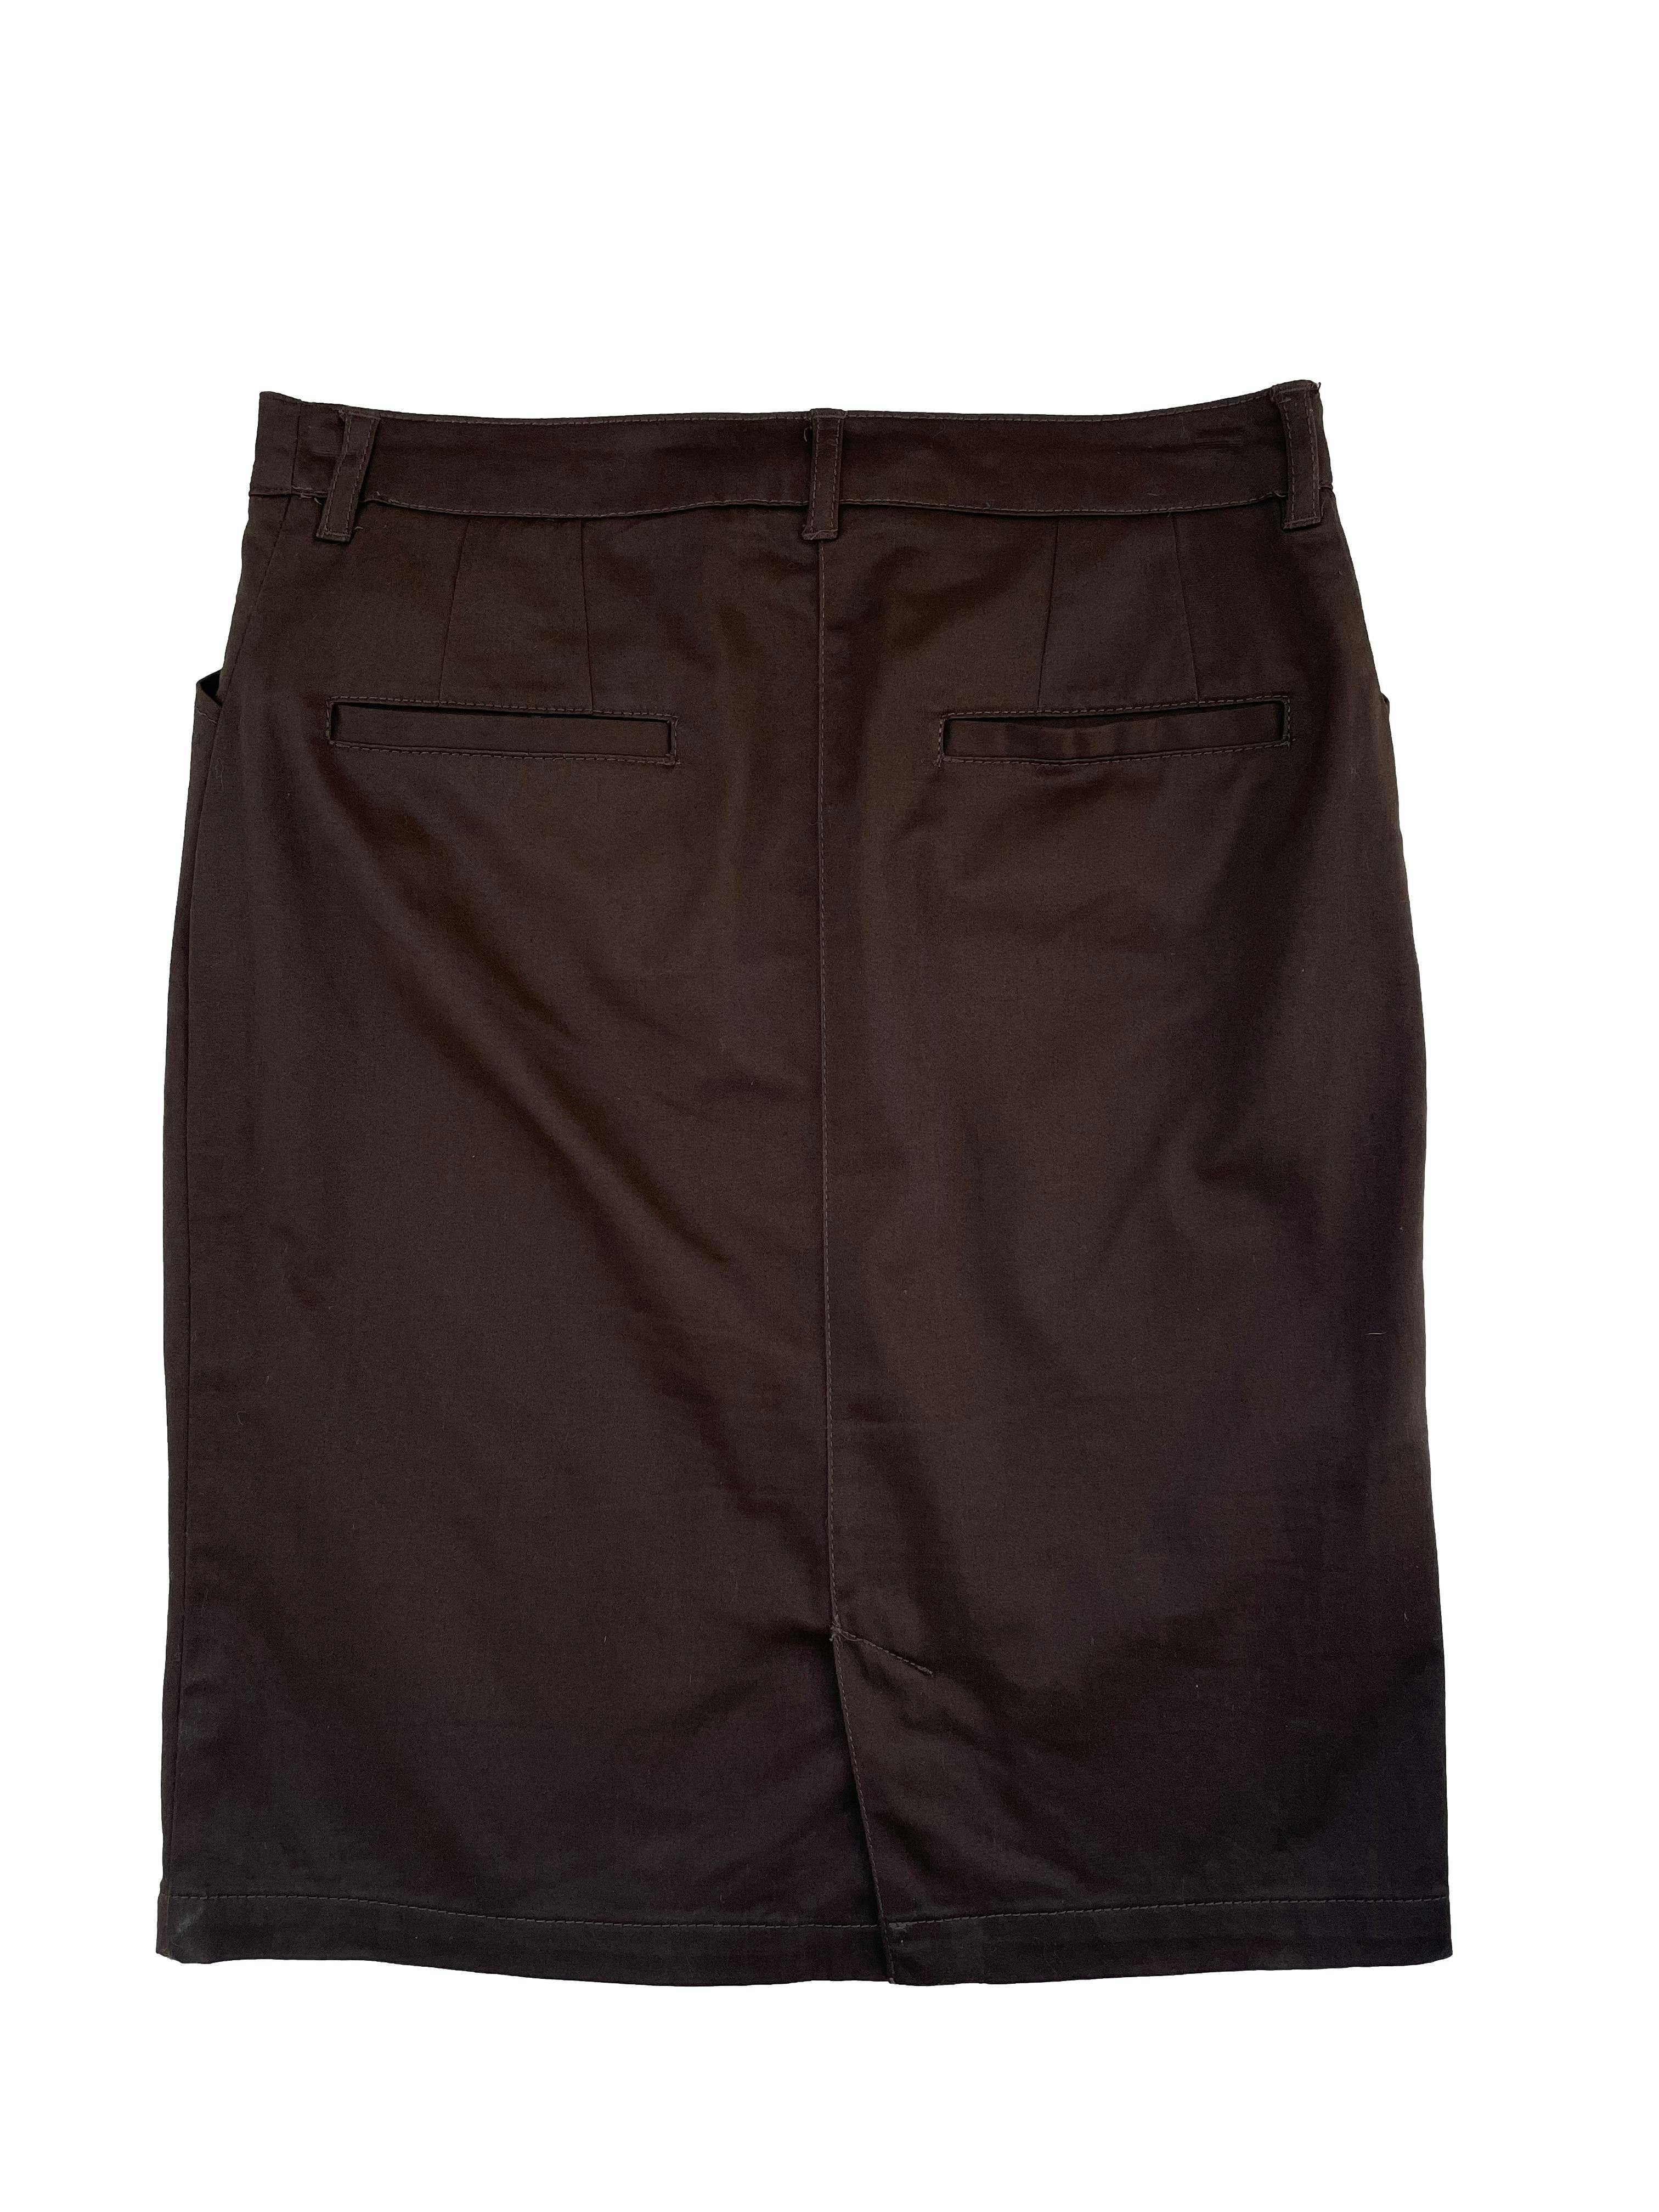 Falda Mango color marrón , tela plana 97% algodón, bolsillos delanteros y falsos bolsillos en espalda, abertura posterior en la basta. Cintura 70 cm, Largo 51cm.